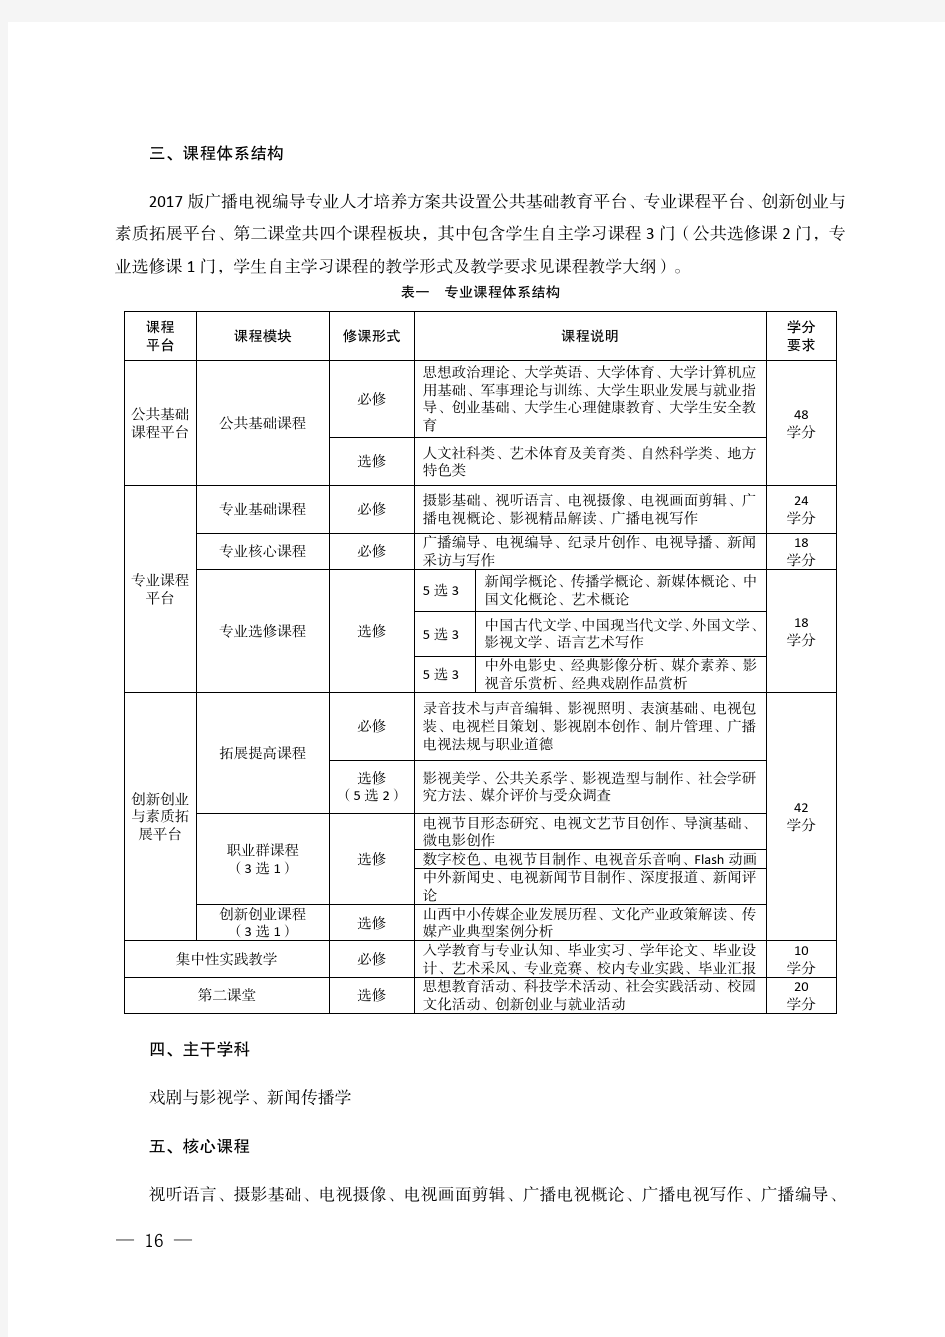 广播电视编导专业人才培养方案.pdf